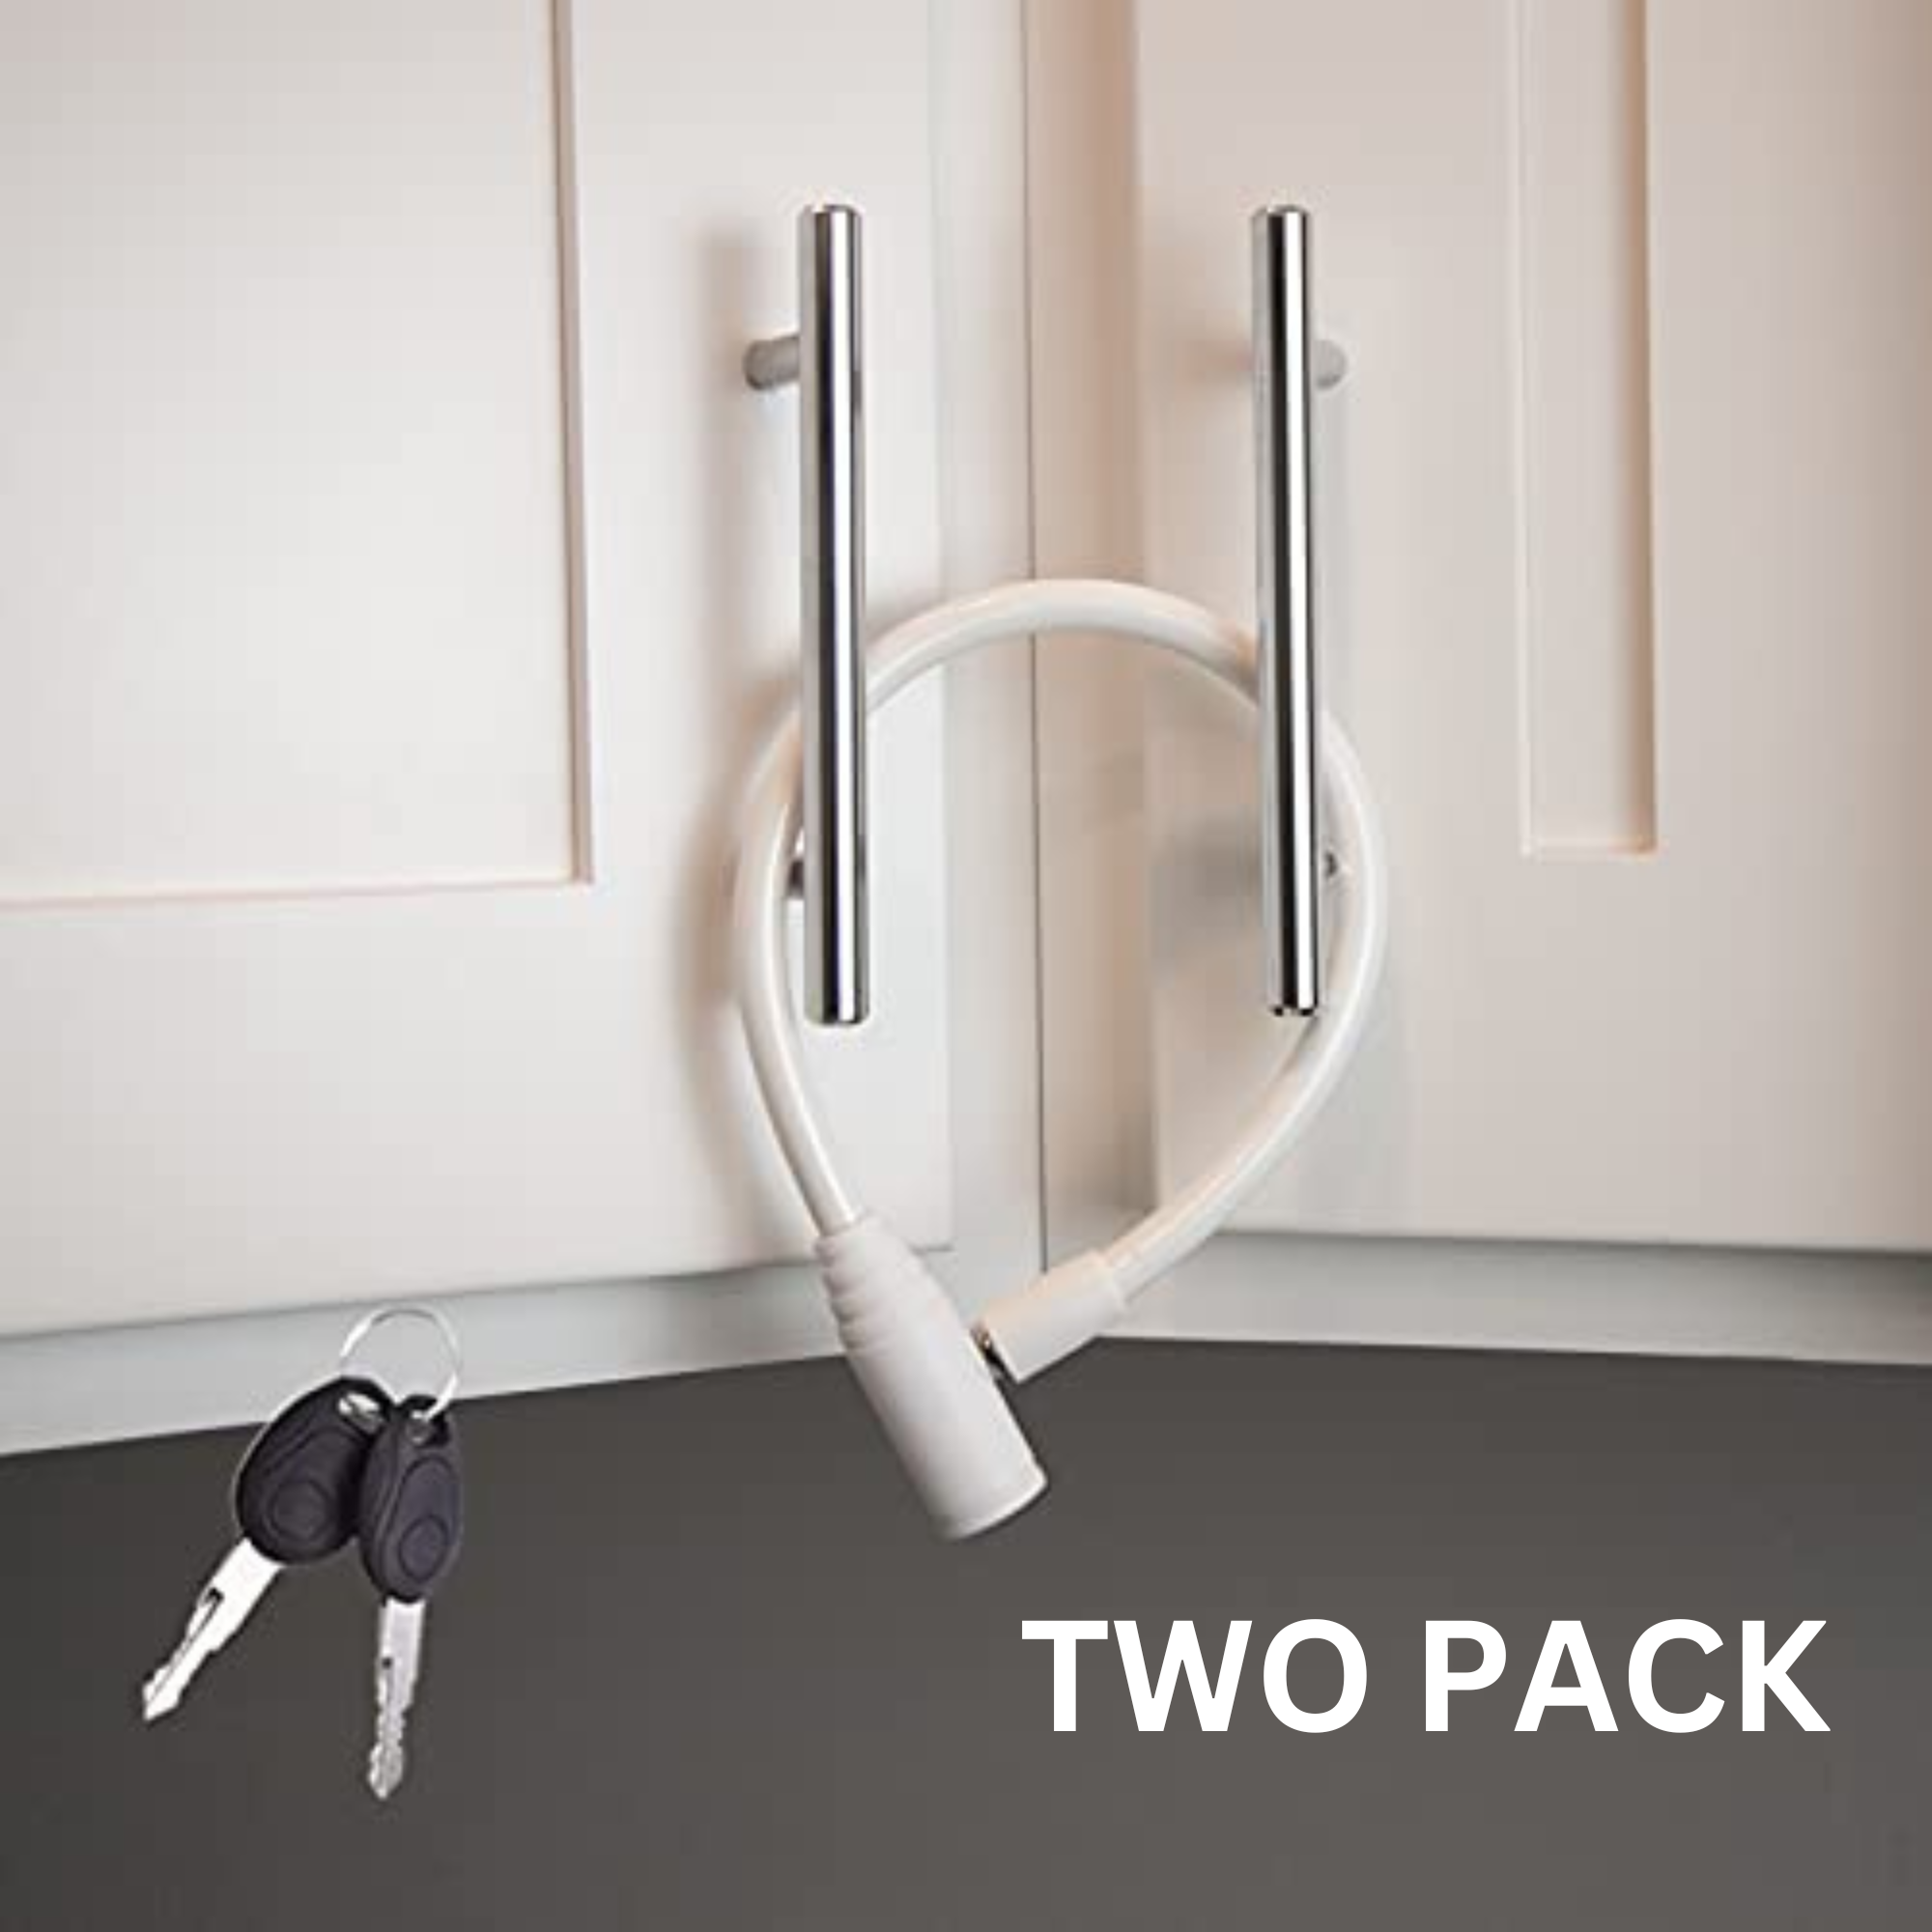 luggage locks stroller lock Cable Lock Refrigerator Door Cable